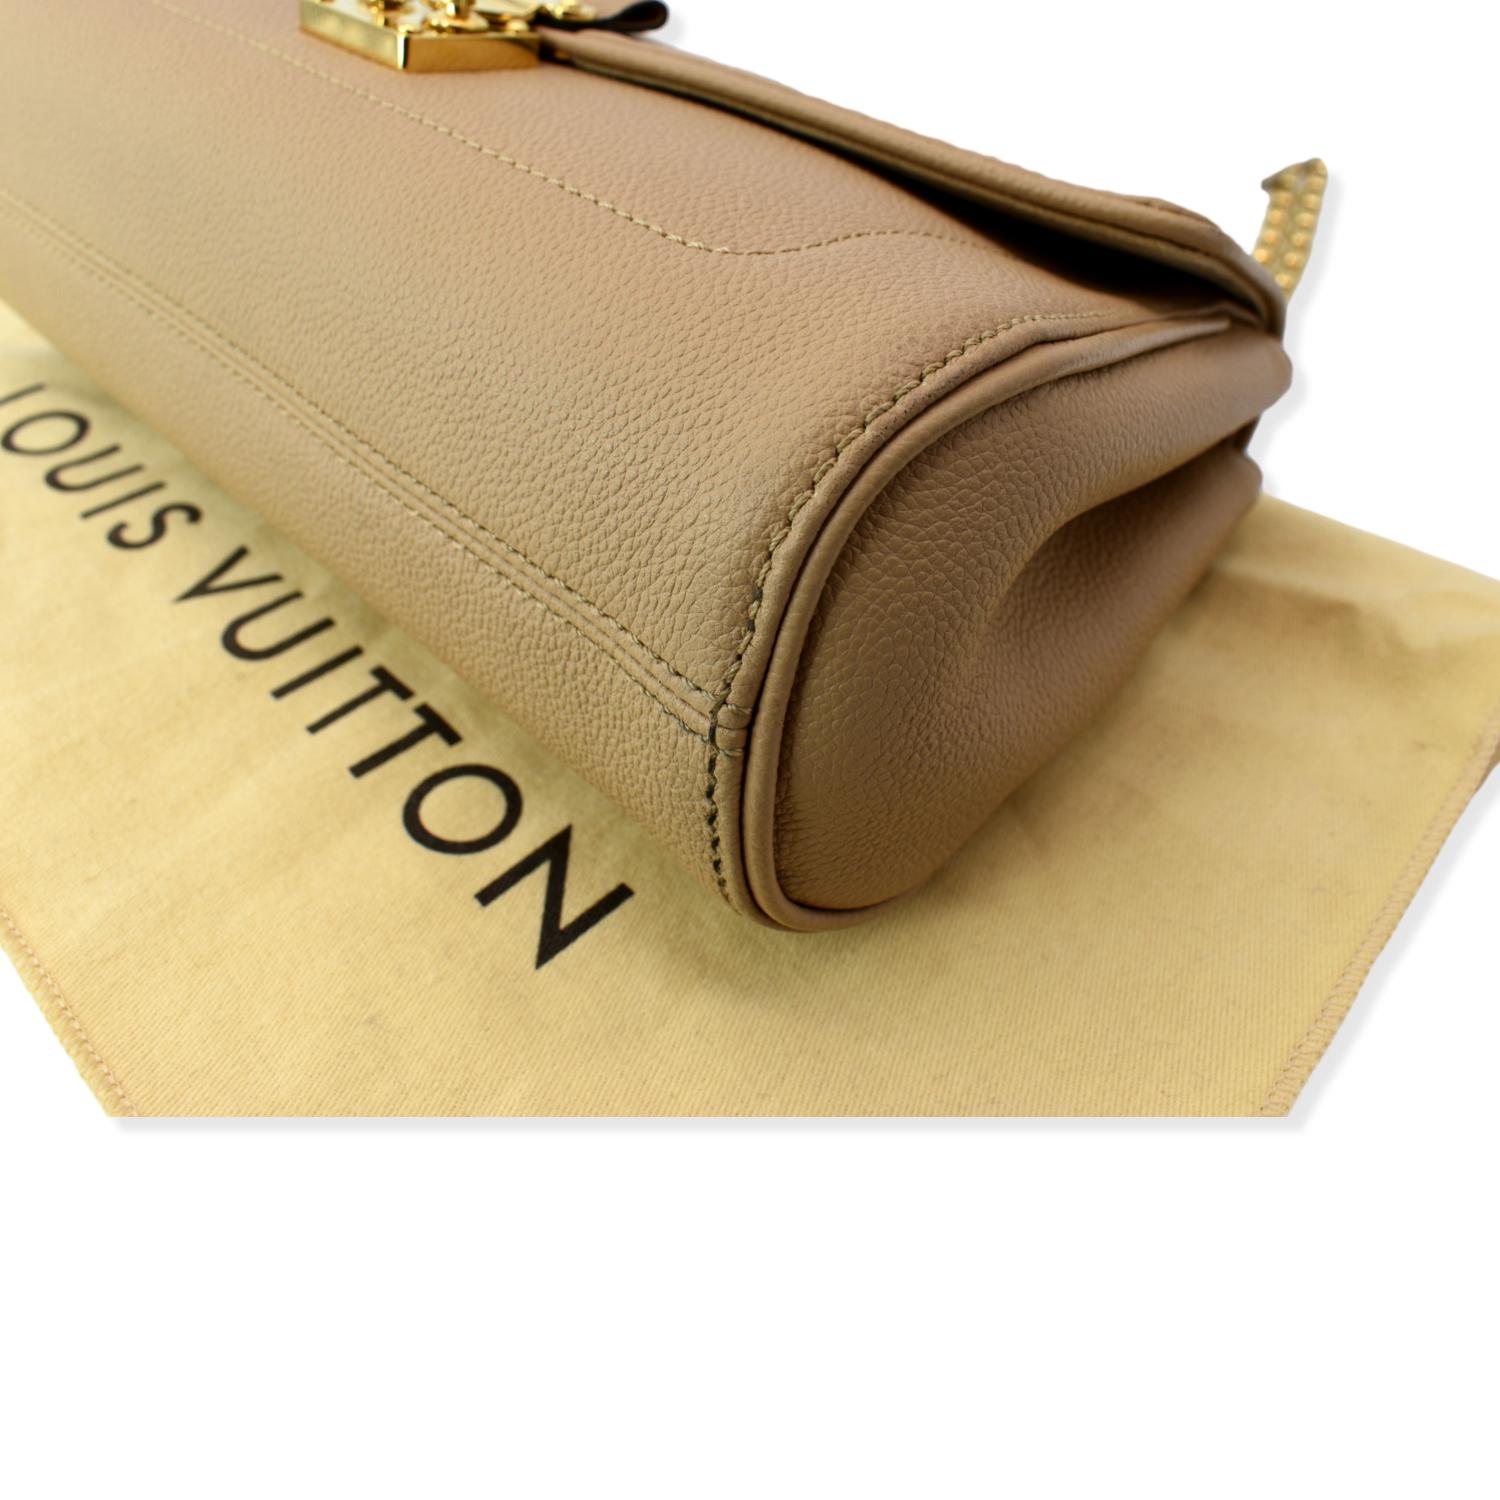 Louis Vuitton, Bags, Louis Vuitton Nude St Germain Pm M Emp Dune Bag